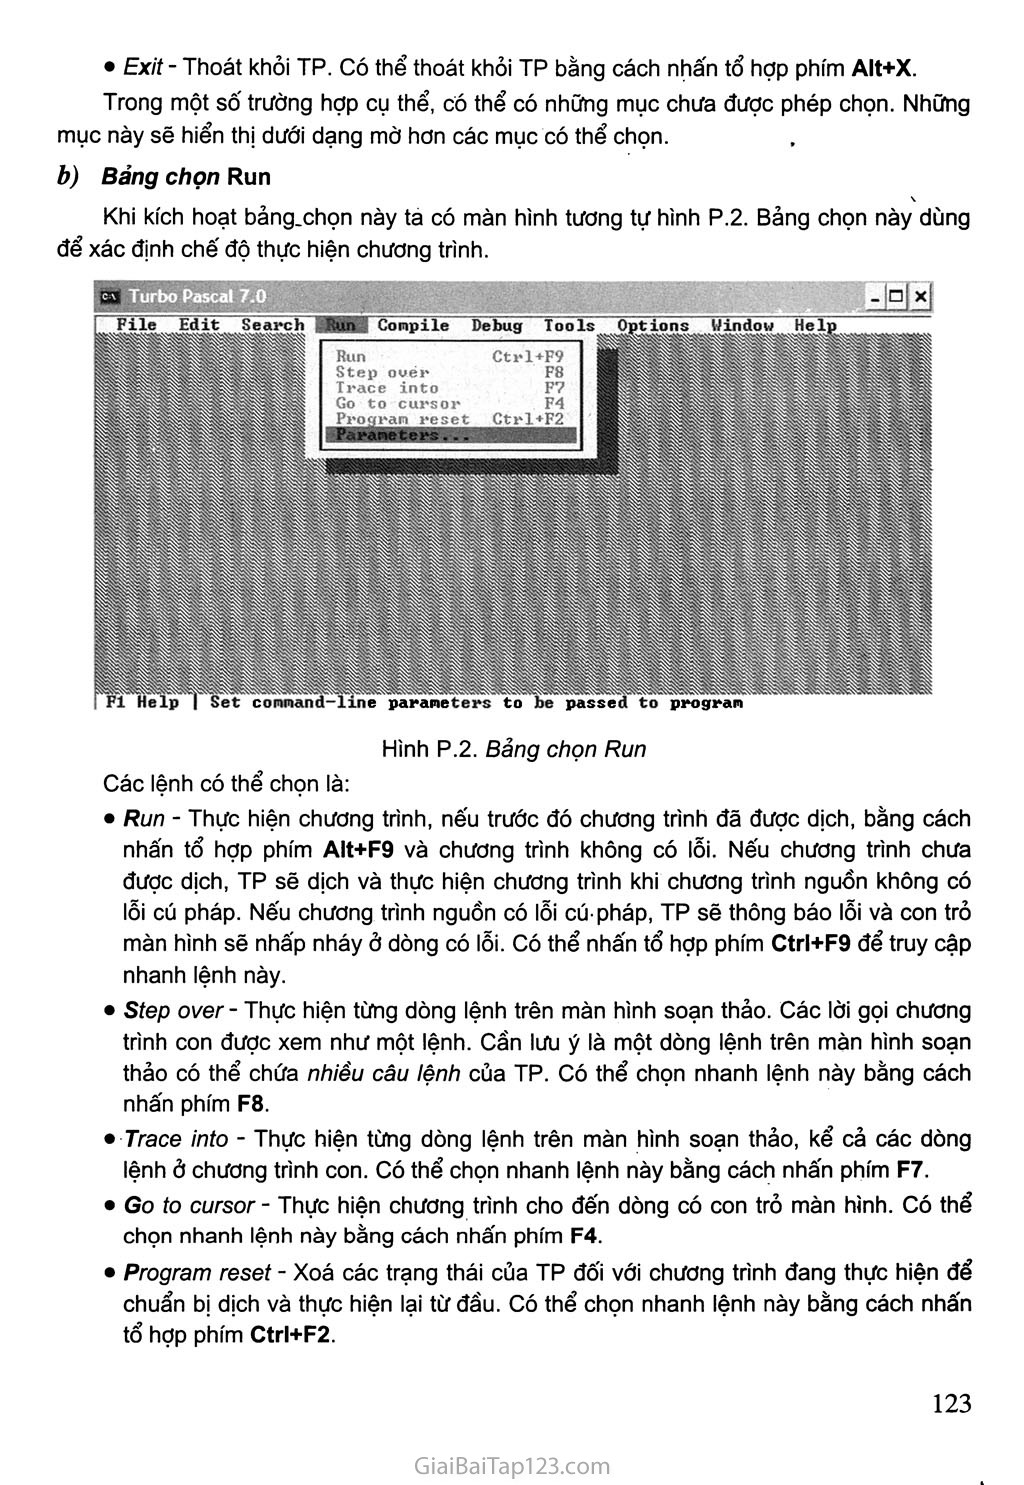 1. Môi trường Turbo Pascal trang 2